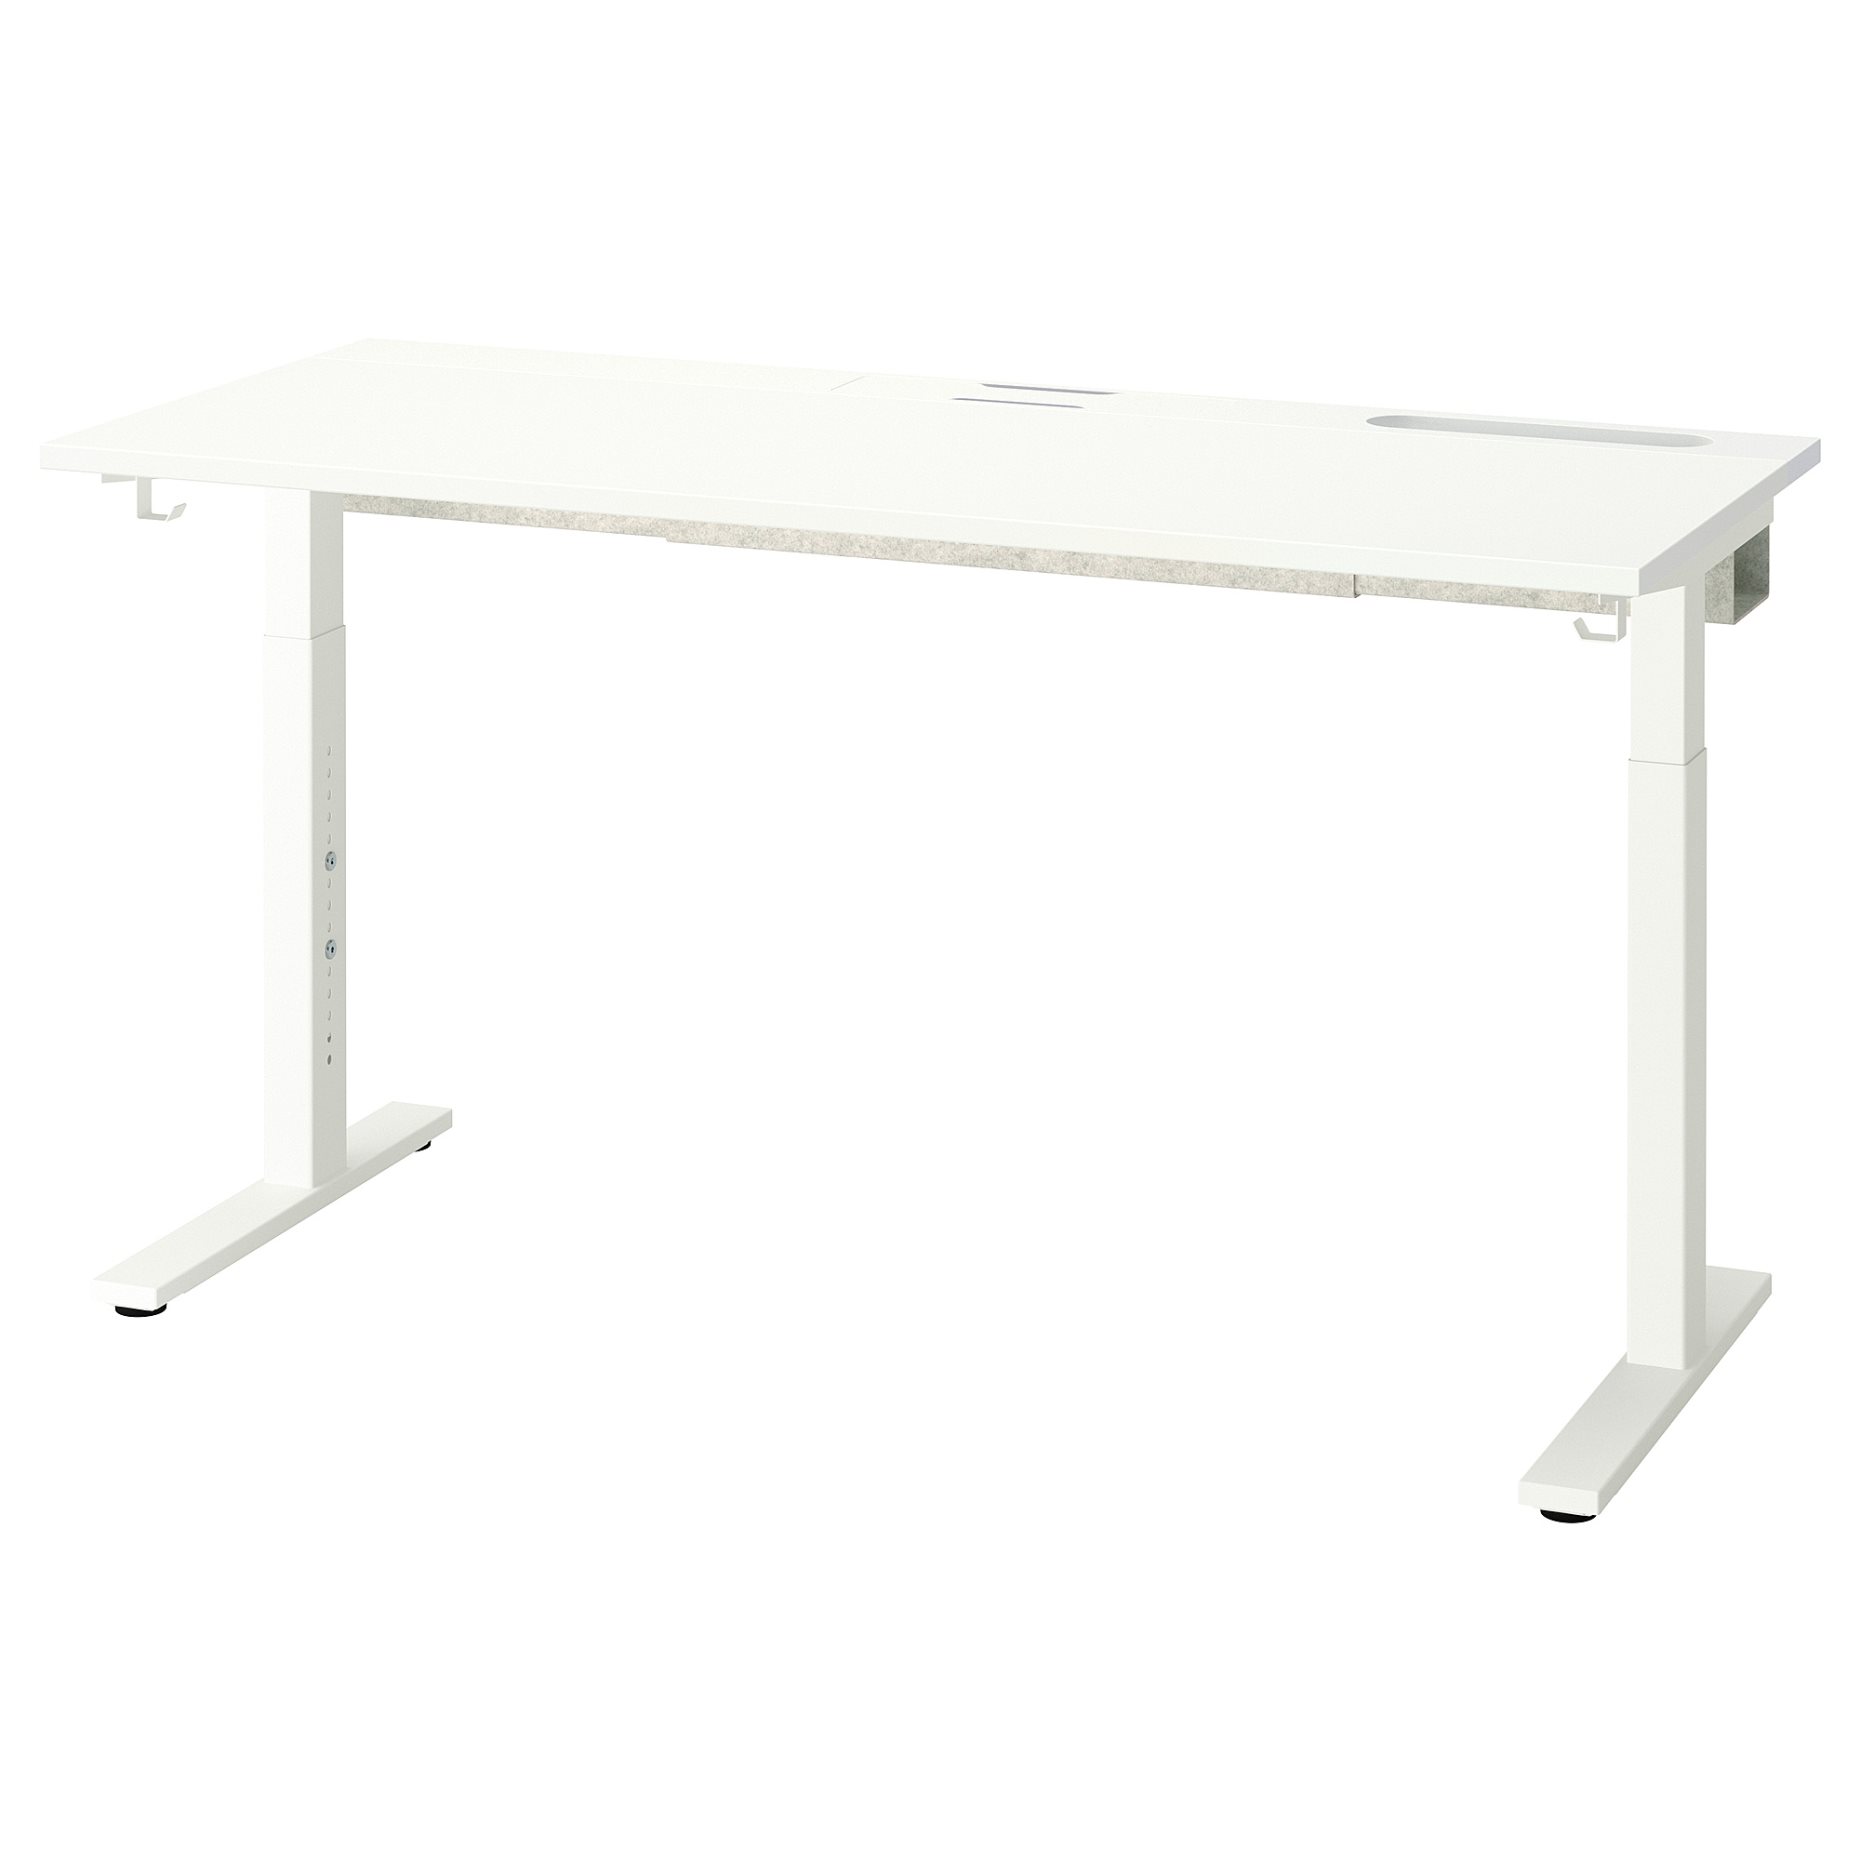 MITTZON, table top, 140x48 cm, 405.156.10